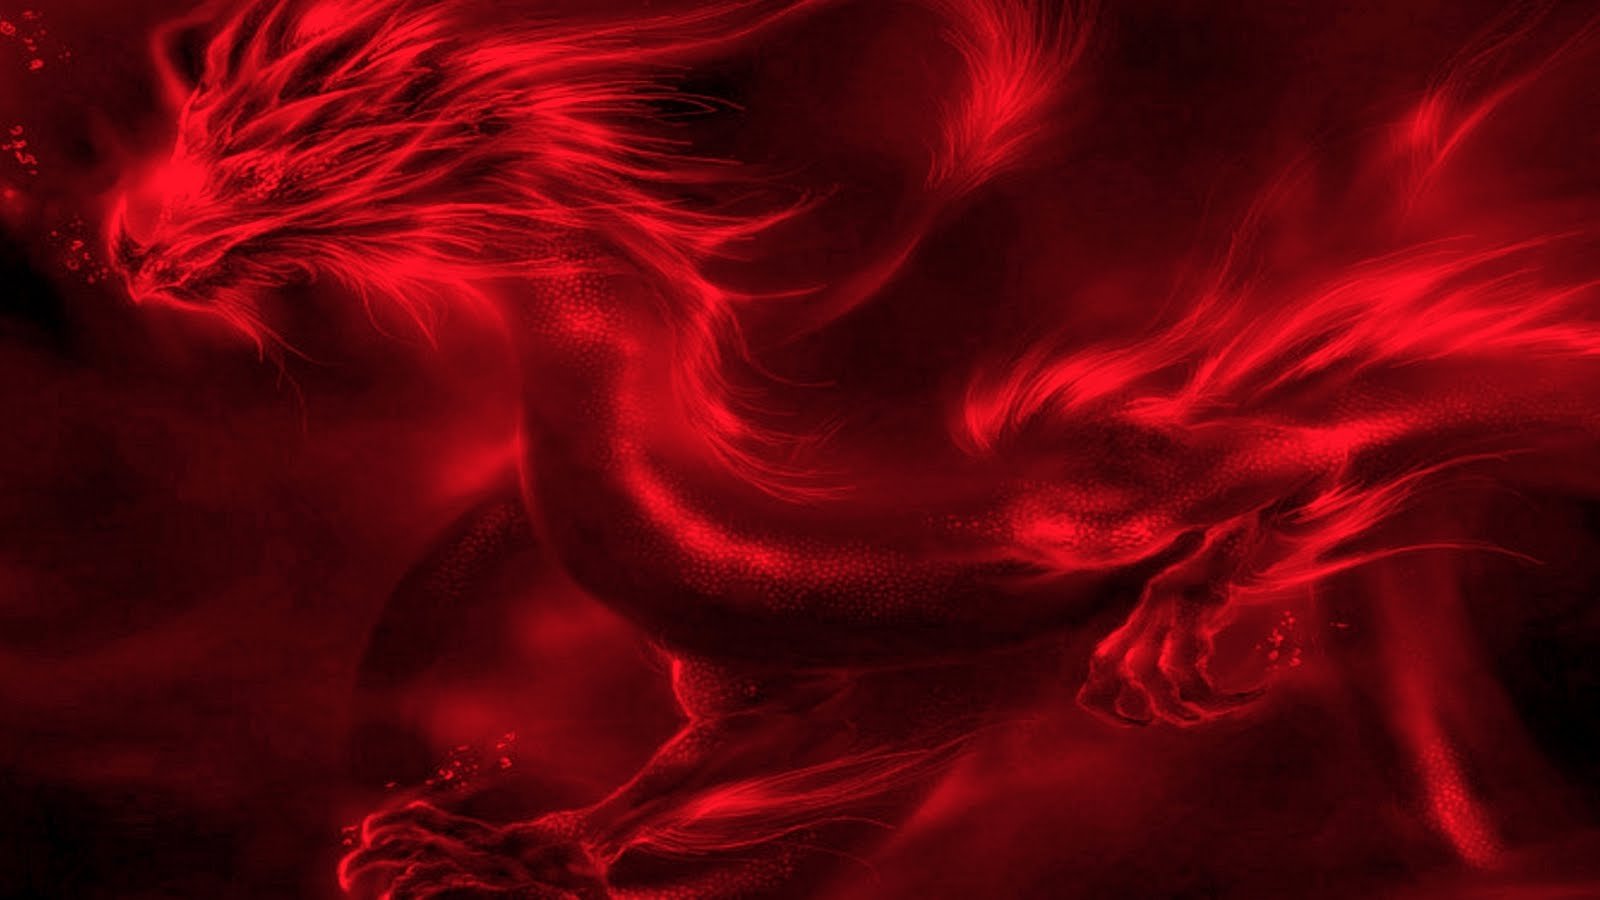 Картинка обои красная. Красивый красный. Огненный дракон. Красные обои на рабочий стол. Алый дракон.